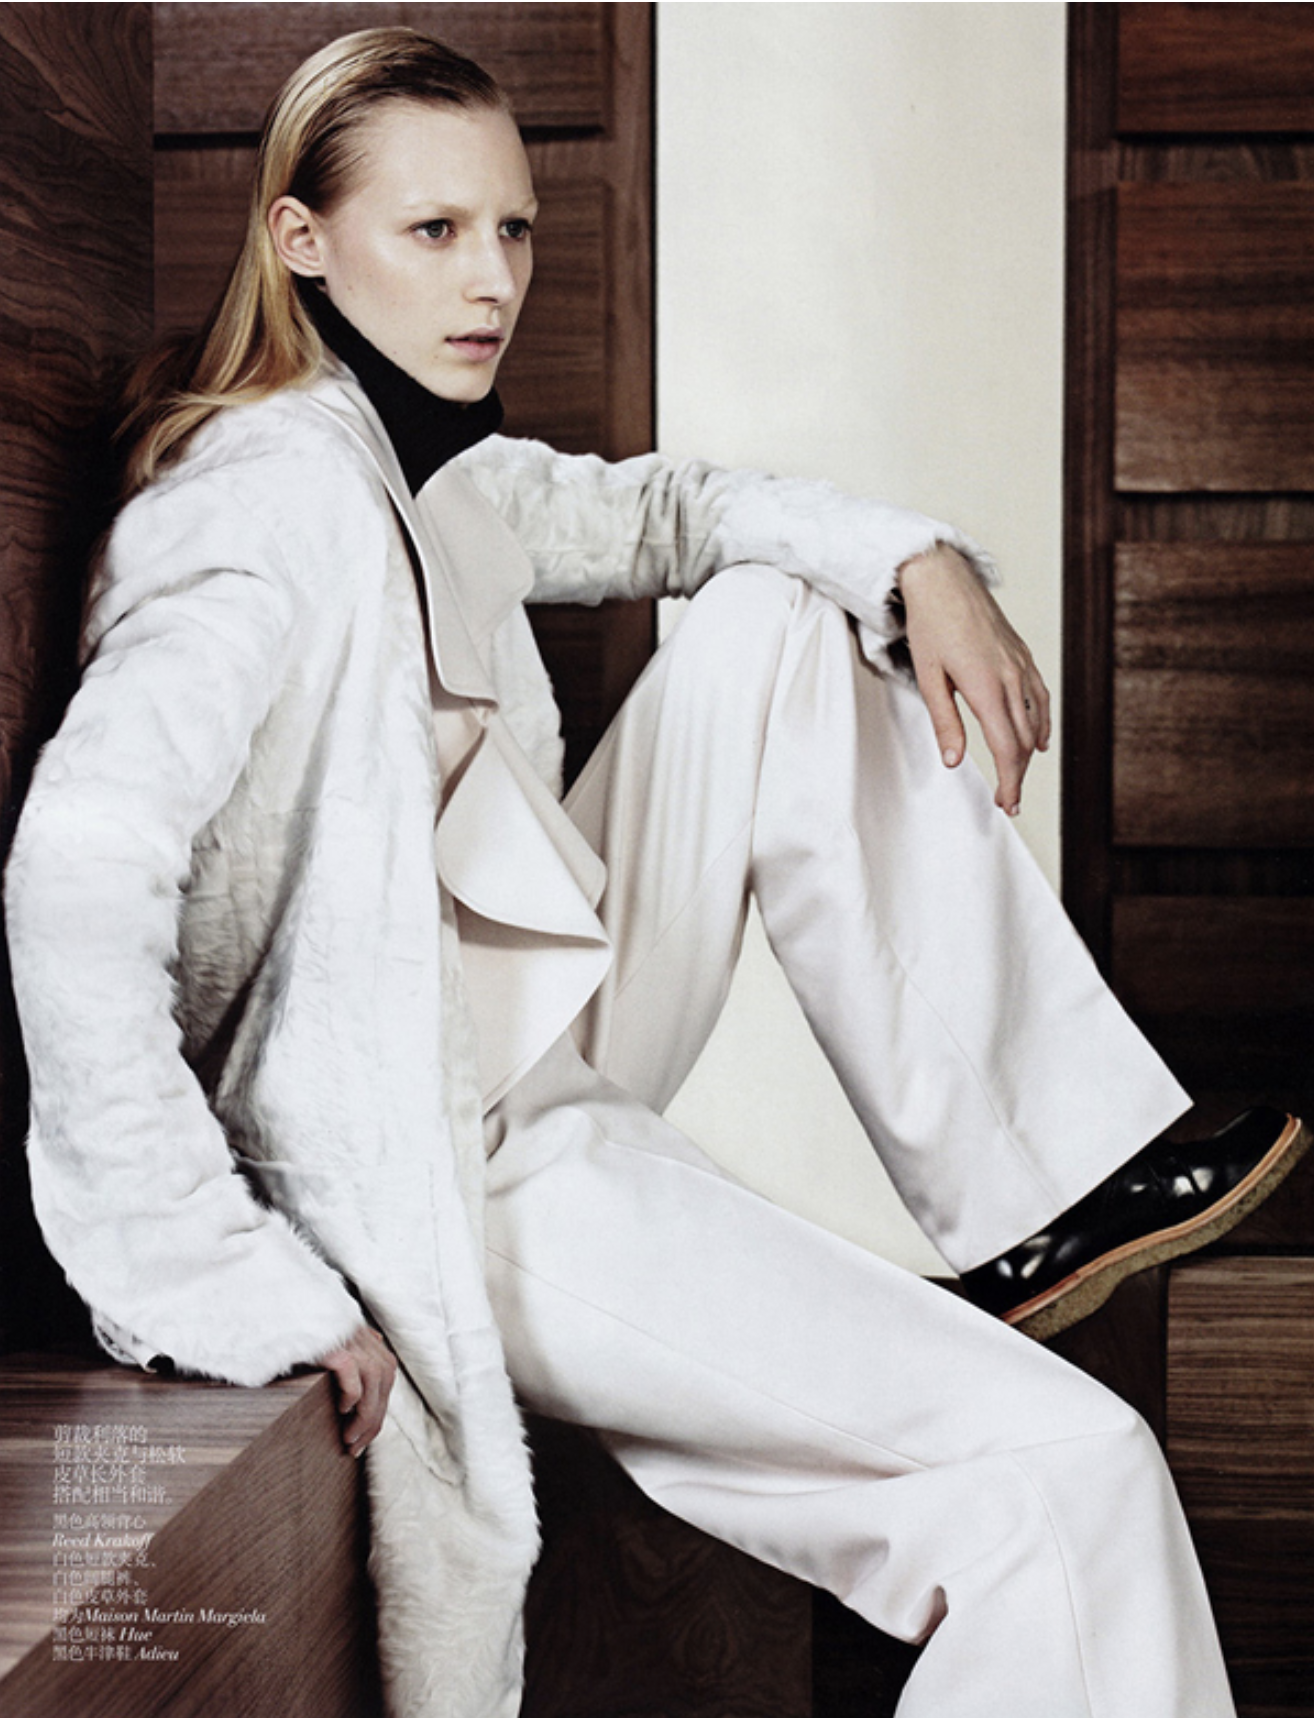 Julia-Nobis-by-Sharif-Hamza-Vogue-China-November-2014-6.png